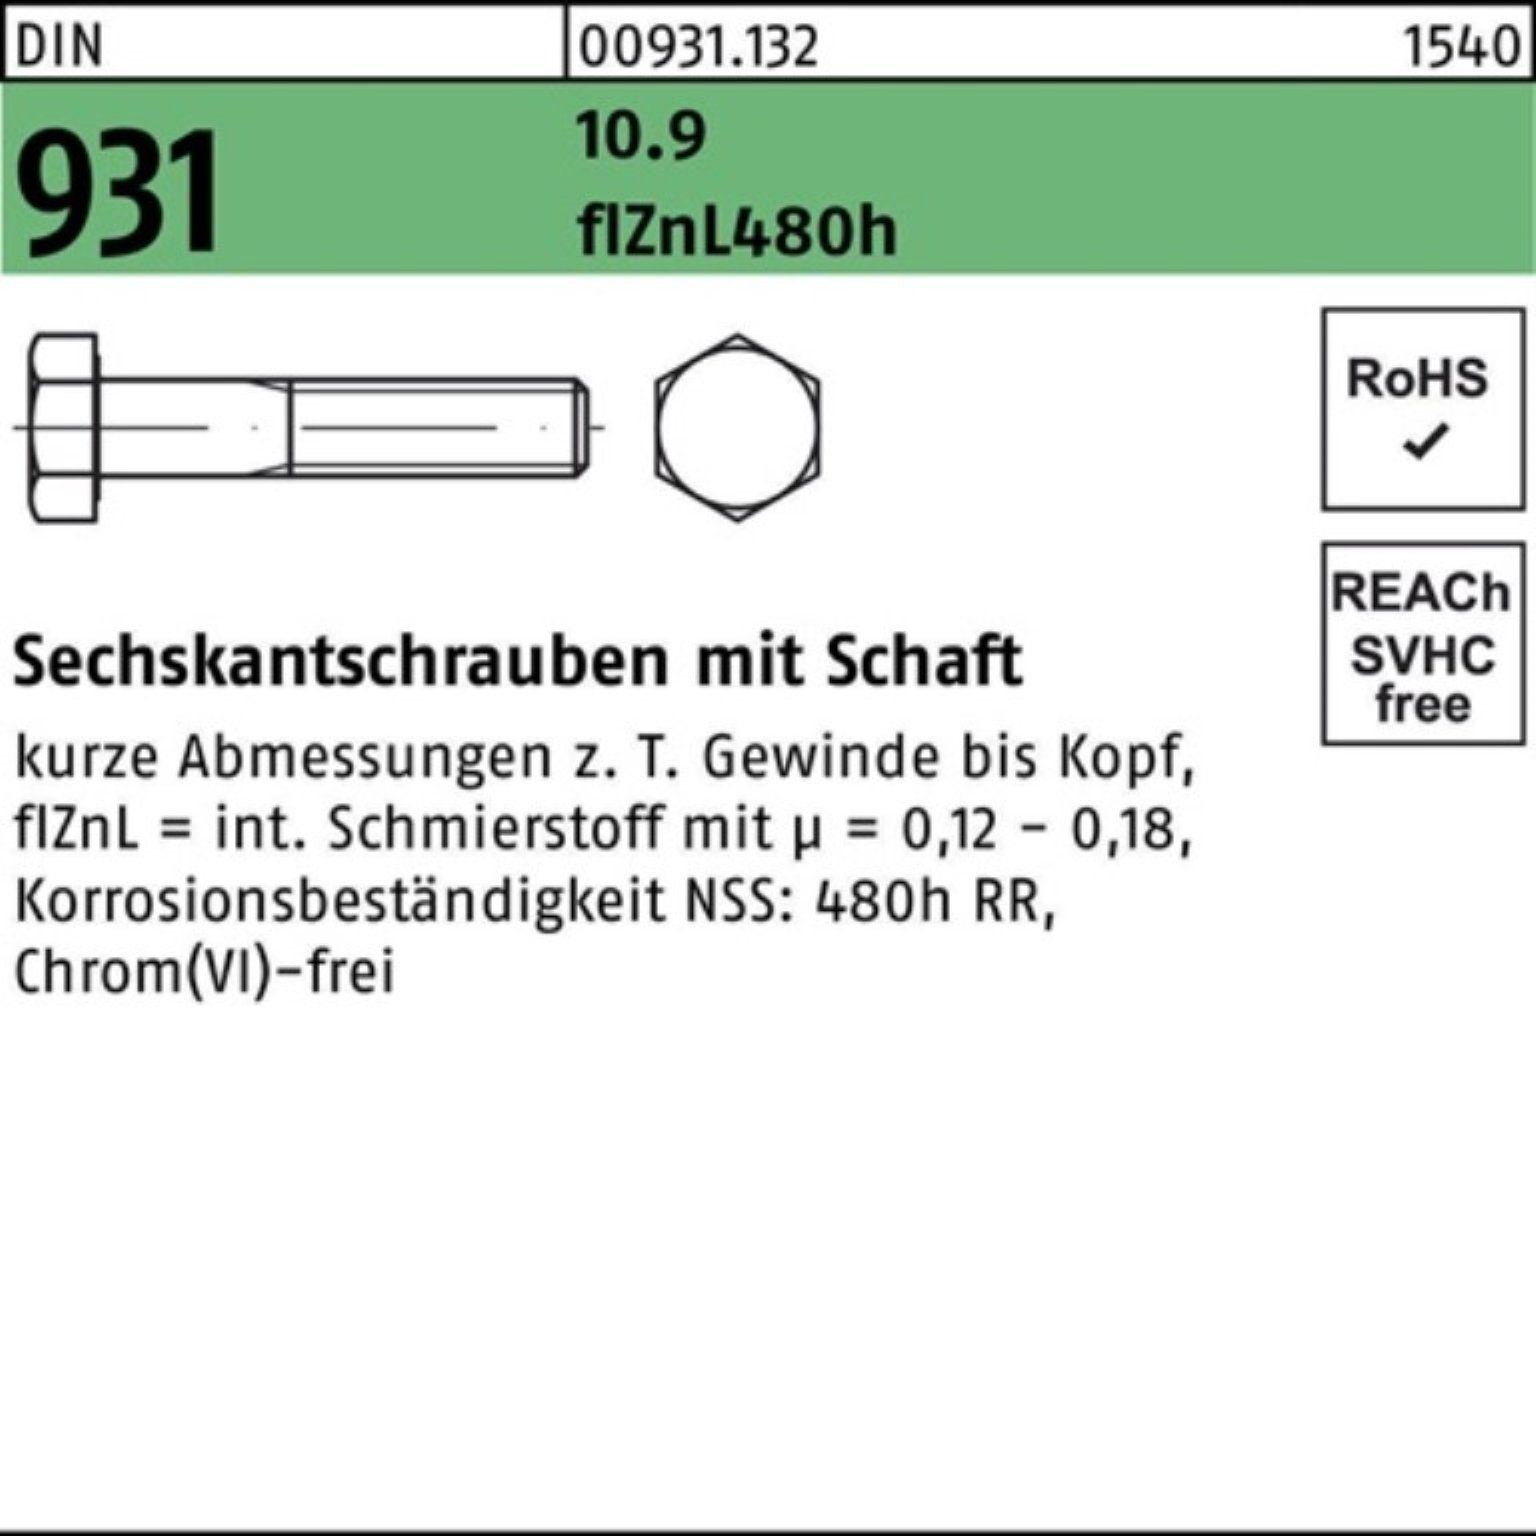 Reyher Sechskantschraube 100er Pack Sechskantschraube 931 10.9 DIN Schaft M24x flZnL/nc/x/x 130